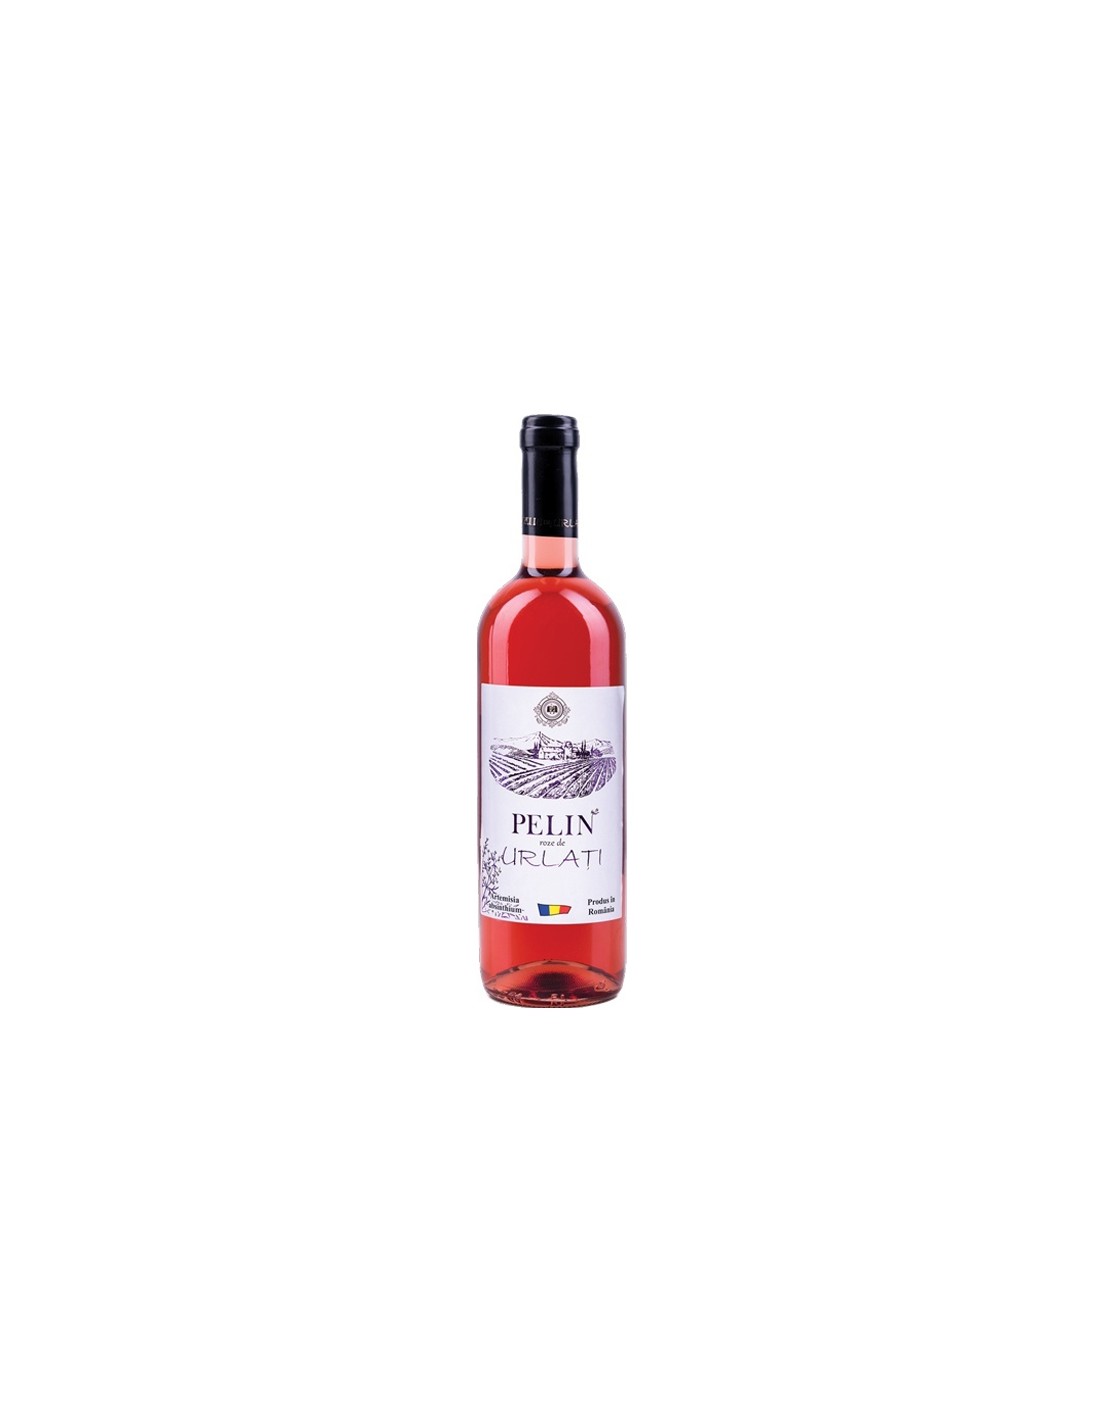 Vin roze demisec, Pelin de Urlati, 13% alc., 0.75L, Romania alcooldiscount.ro